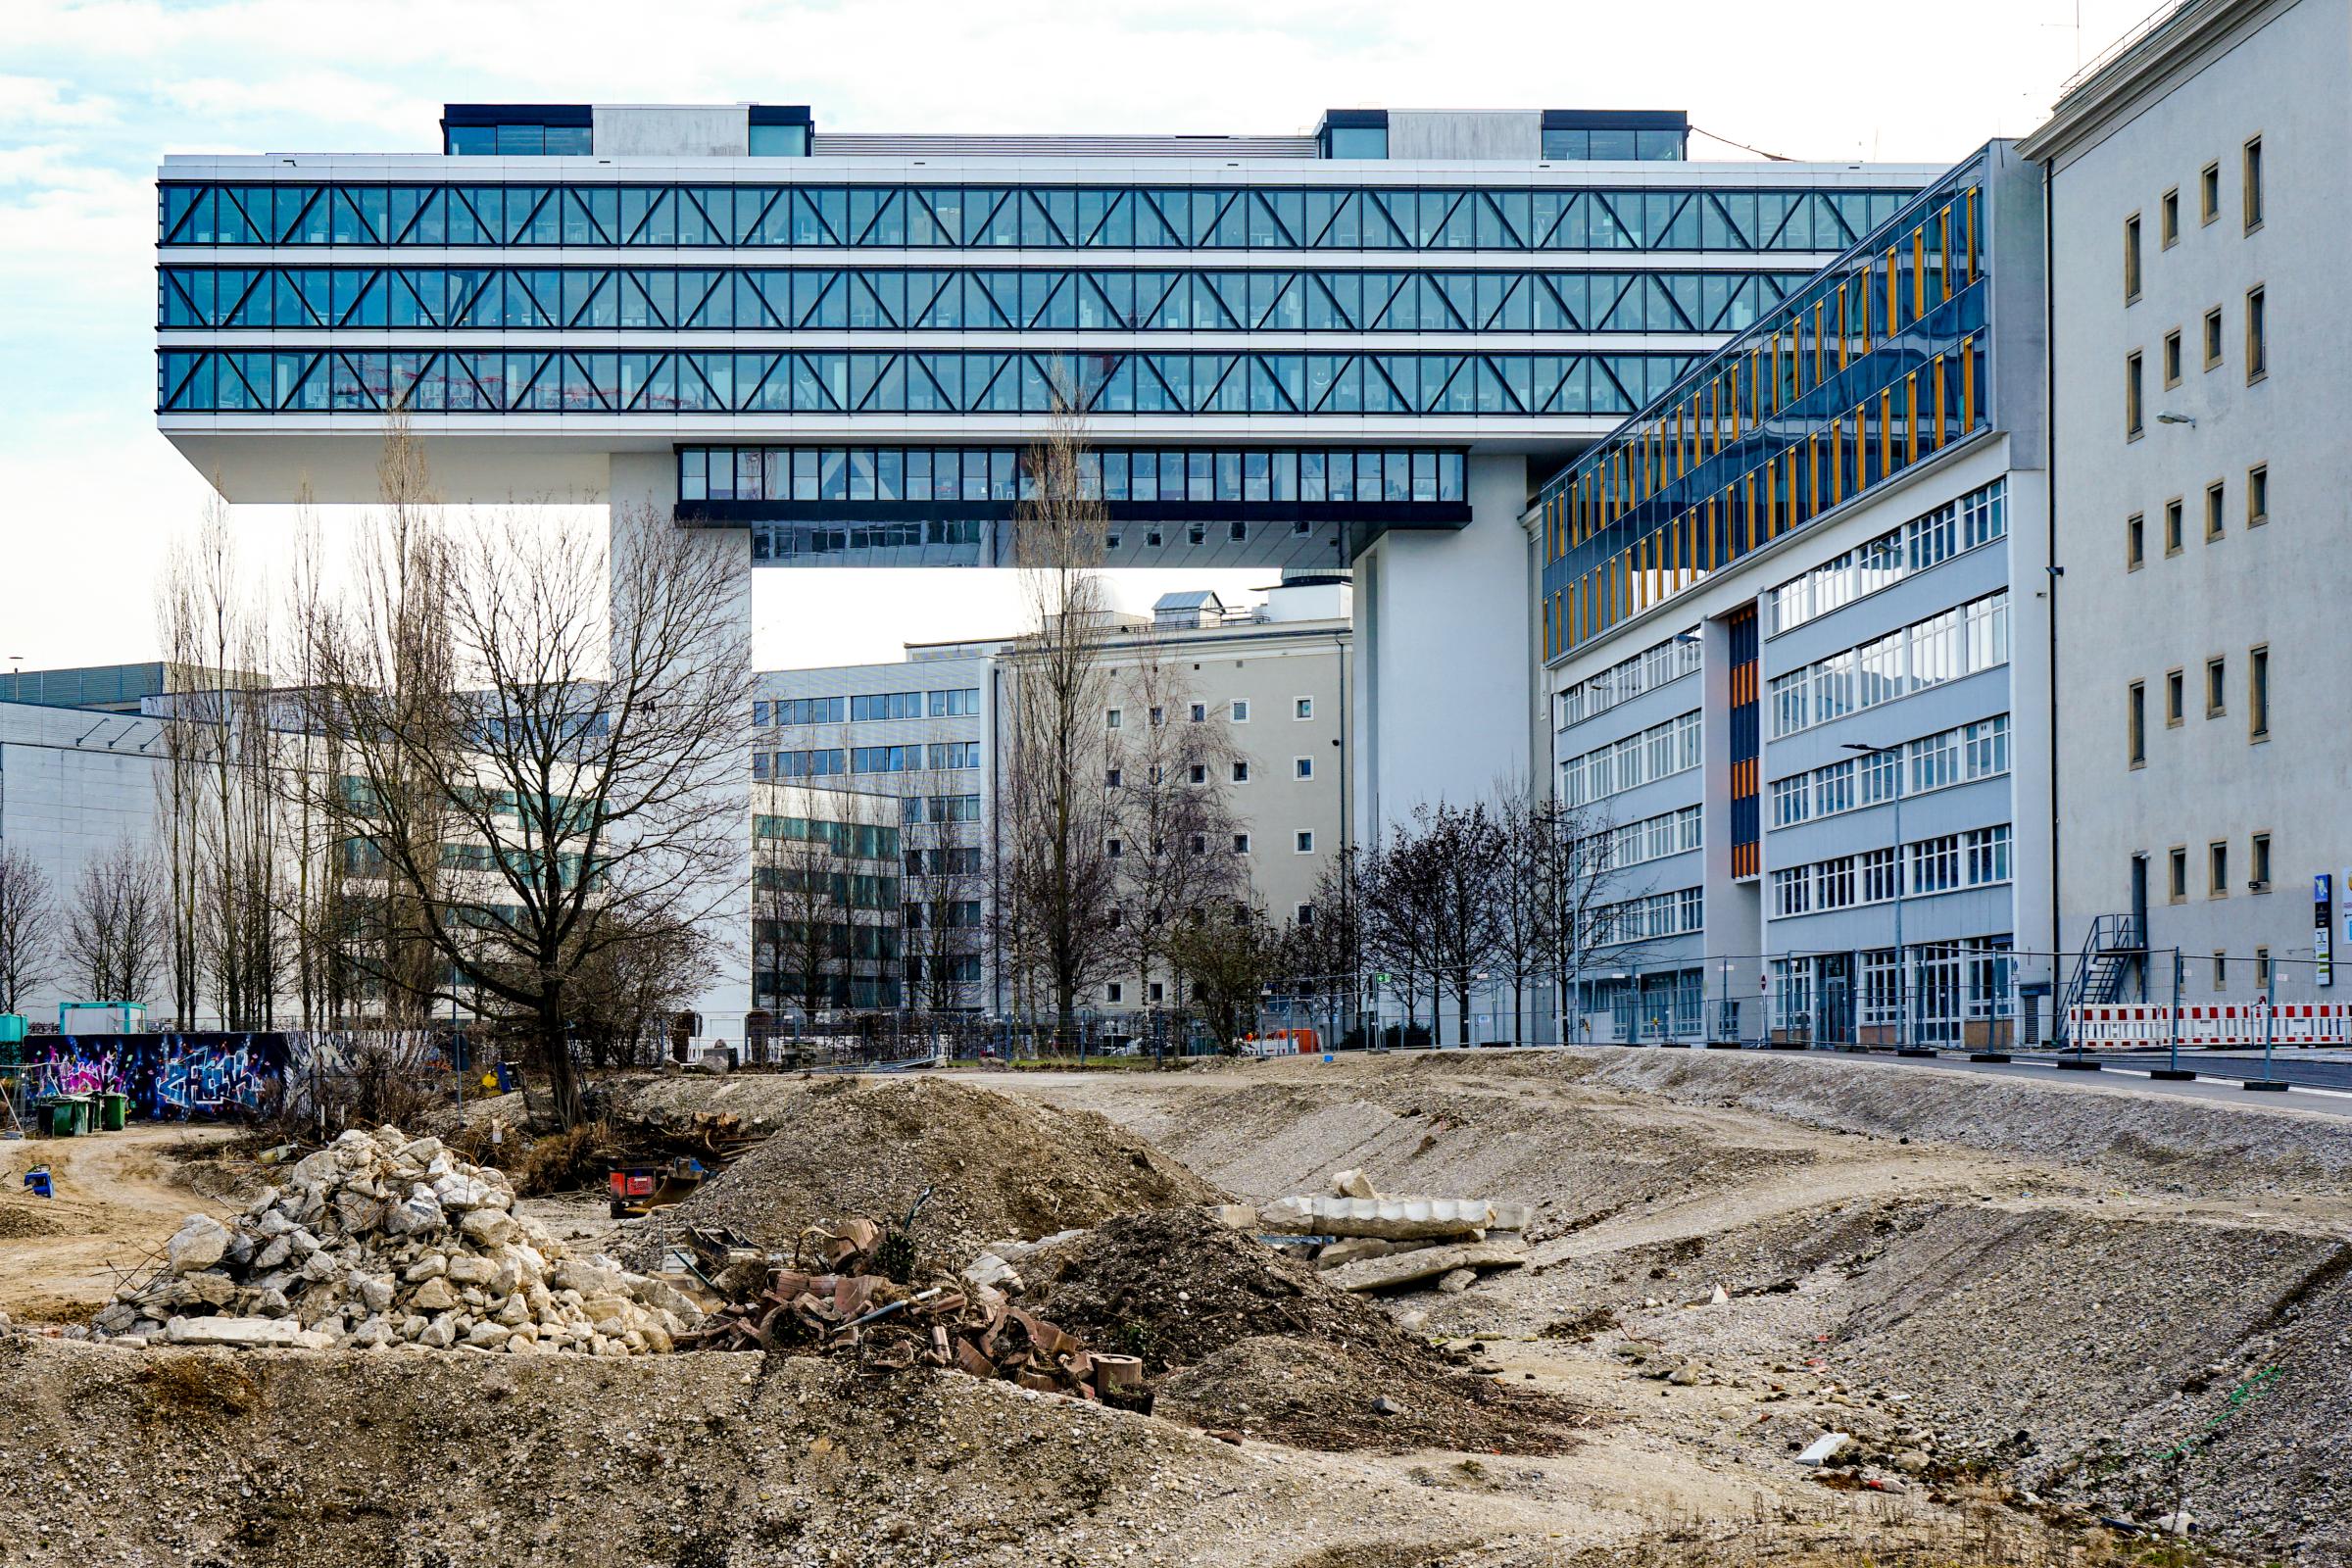 Werksviertel Munich - An exciting urban development project with ephemeral street art